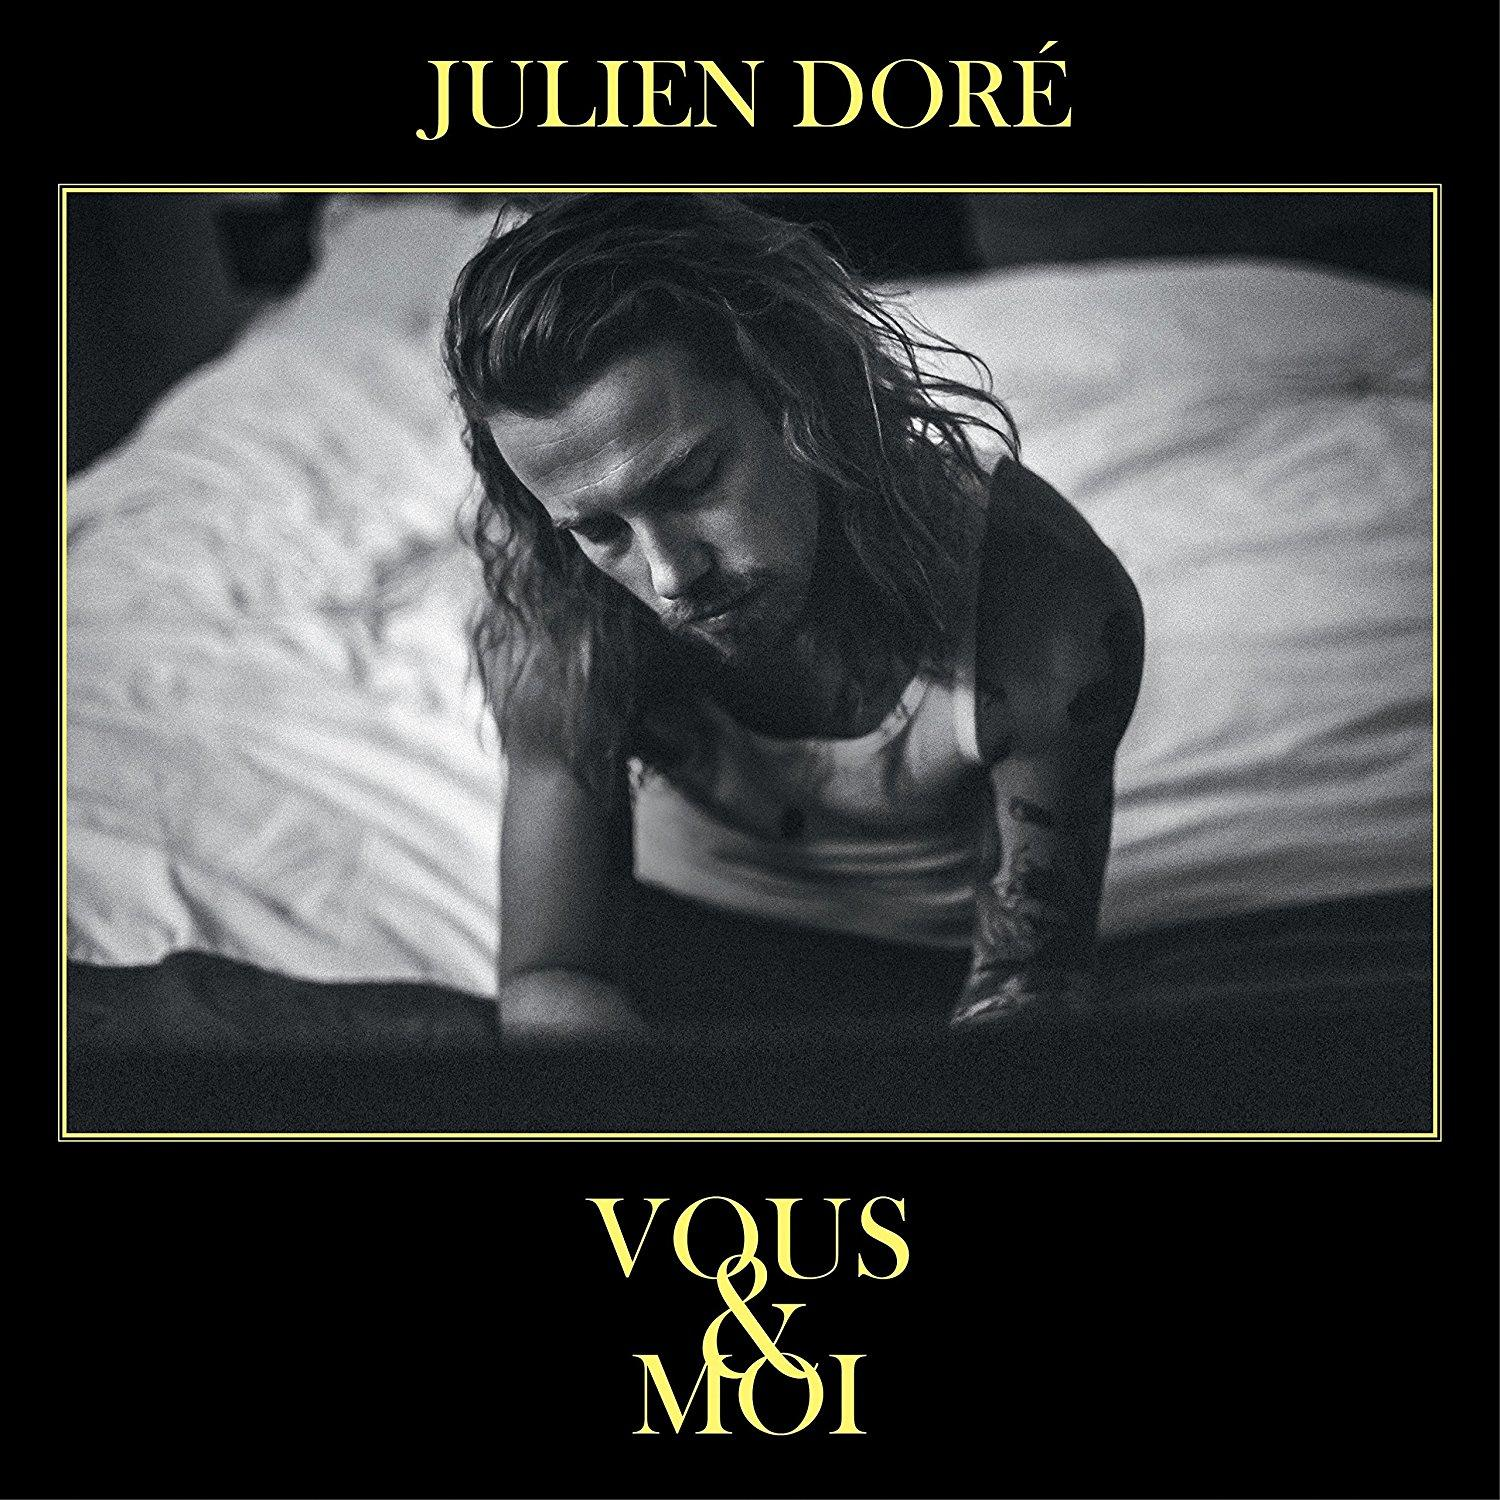 Julien Dore Vous - - Moi & (CD)